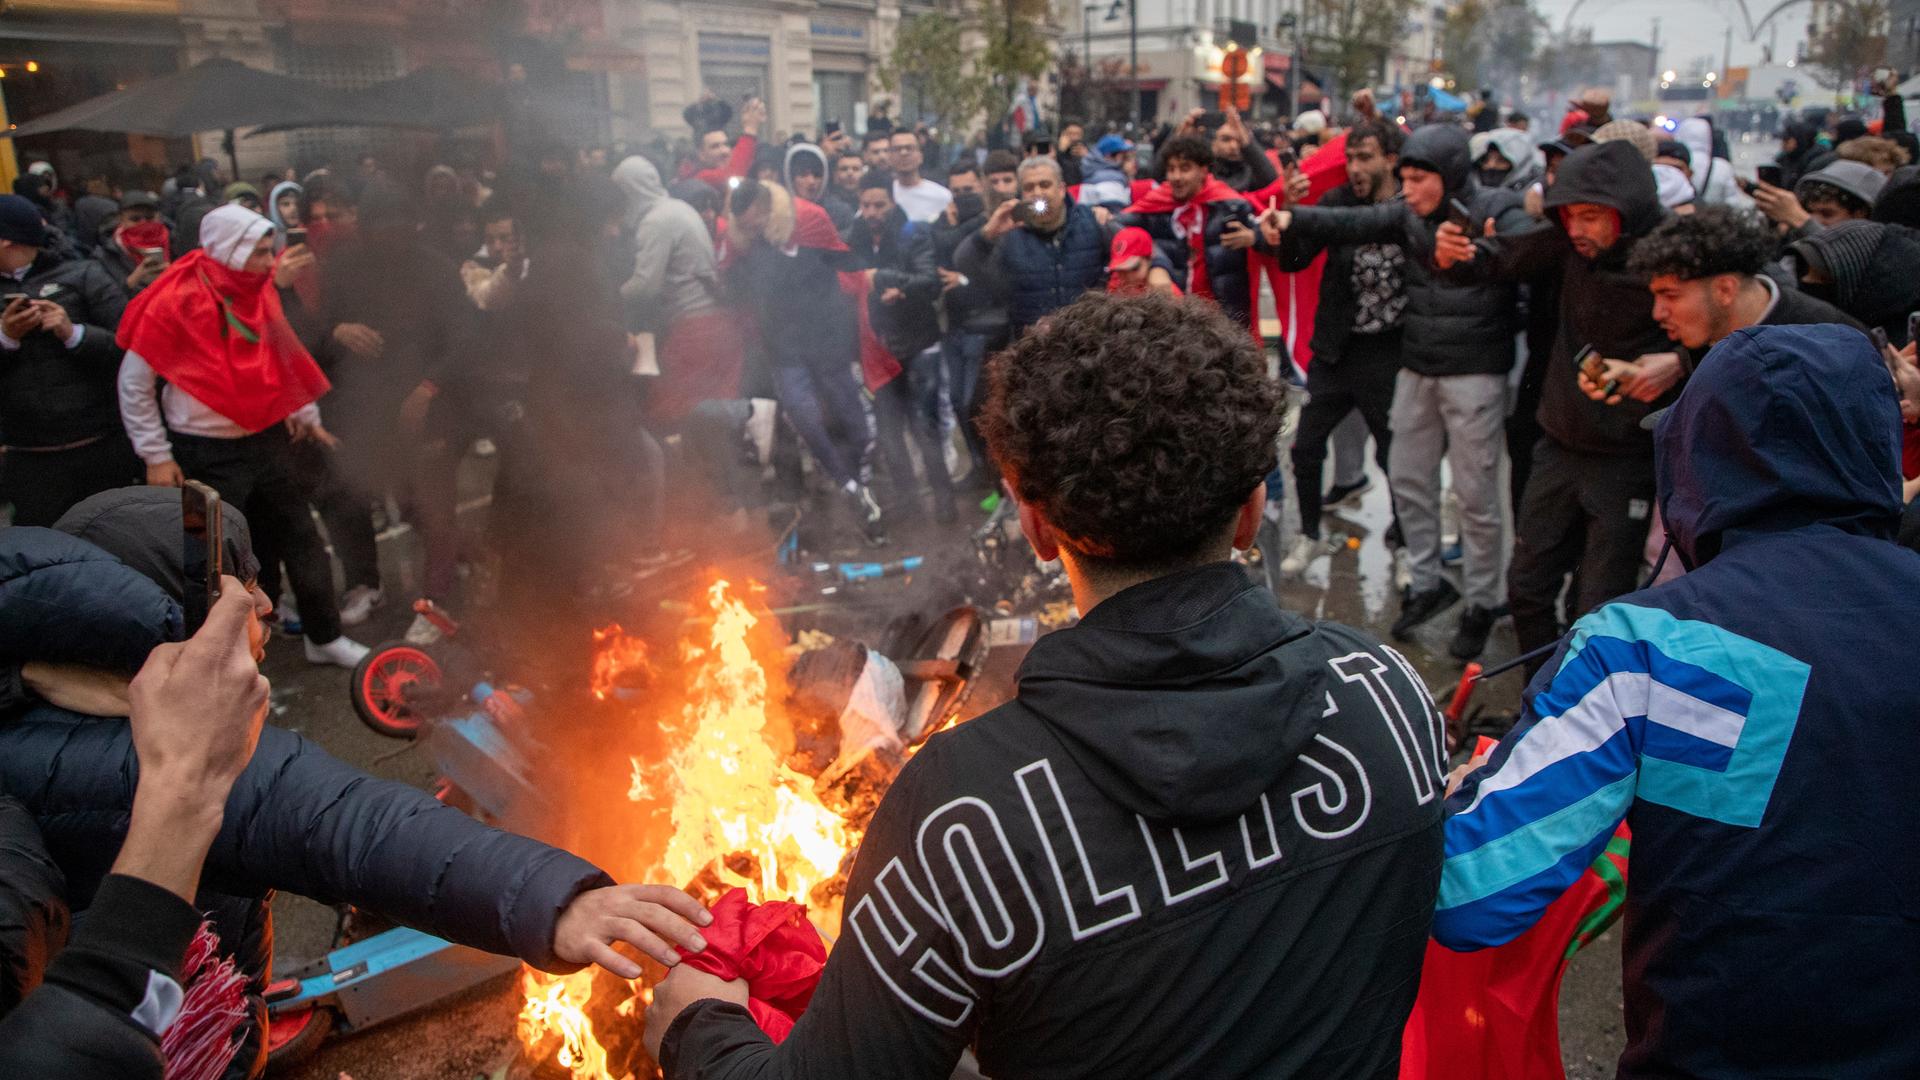 Jugendliche randalieren in der Stadt Brüssel. Sie stehen im Kreis um brennende Gegenstände, darunter ein E-Roller. 